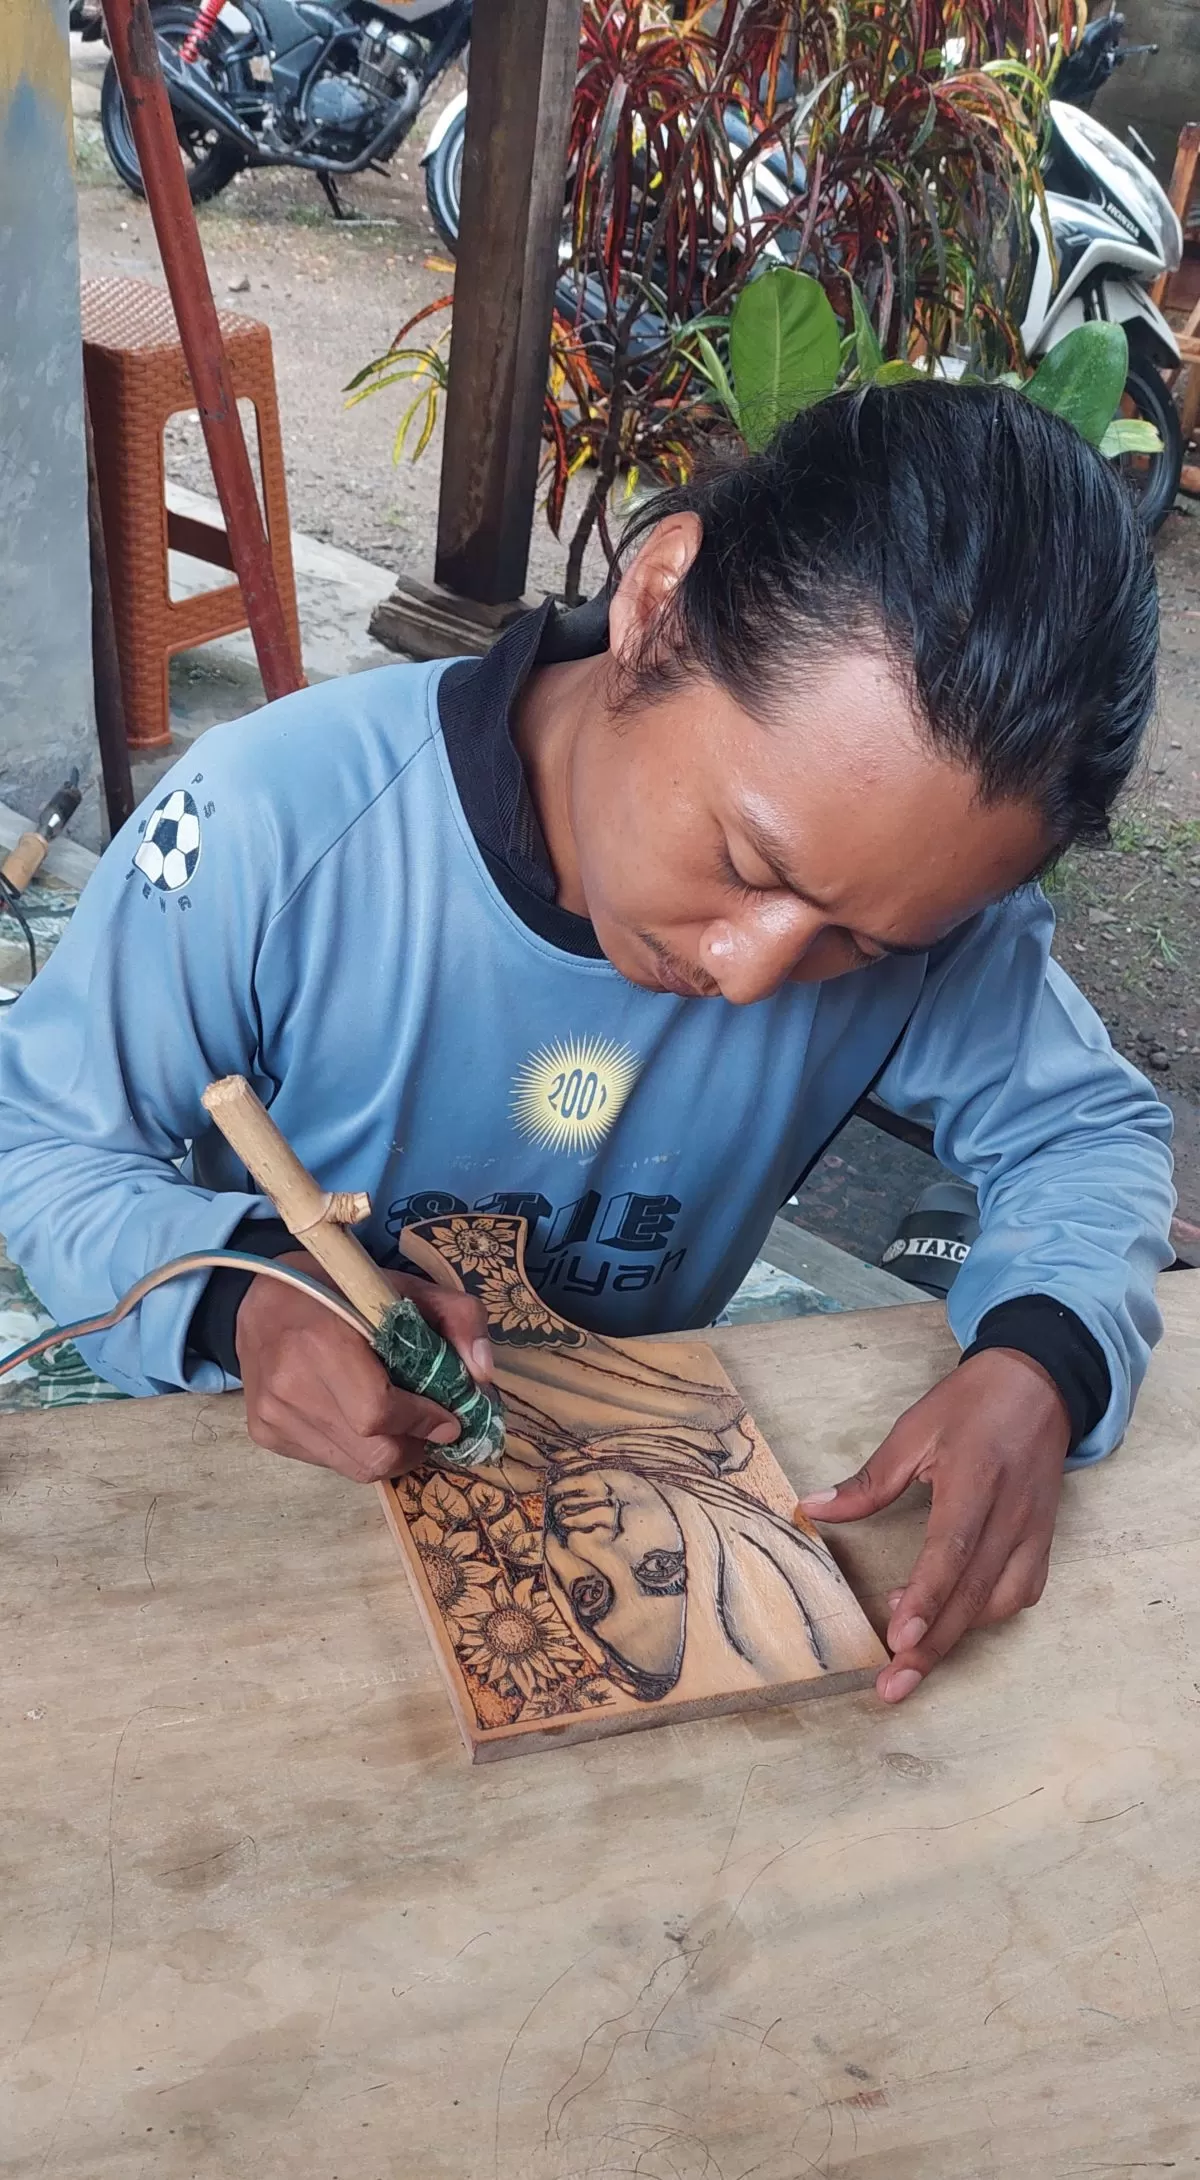 Cerita Robeth Zarkasi Seniman Lukis Obong Jebolan Pondok Asal Trenggalek yang Karyanya Menembus hingga Luar Jawa